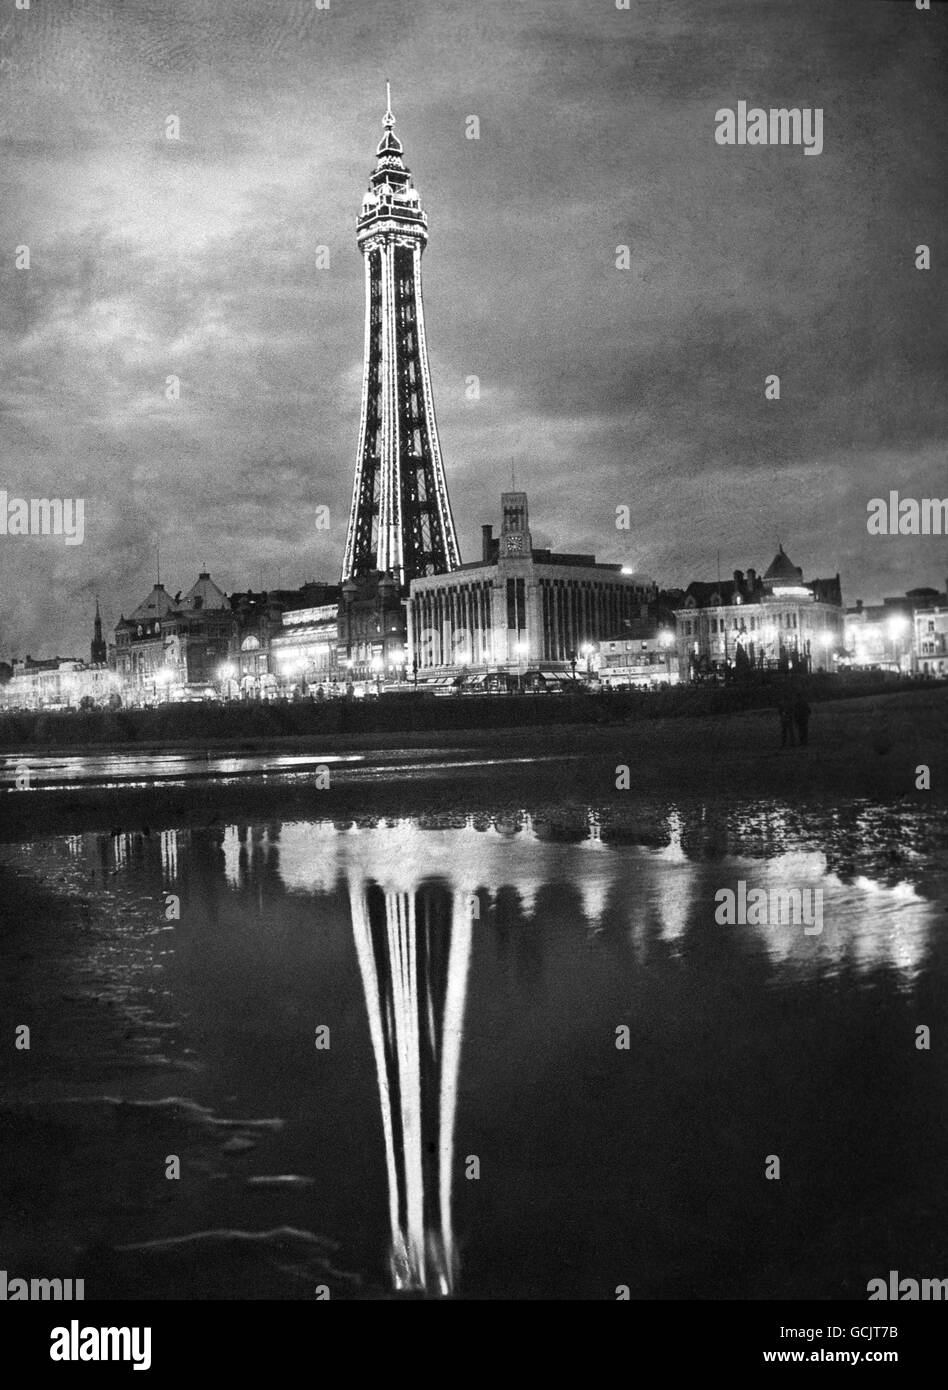 BLACKPOOL TOWER, ILLUMINATO IN UNA PROVA DELLE ILLUMINAZIONI DA ACCENDERE B AMBASCIATORE SOVIETICO JACOB MALIK. HA BISOGNO DI 10,000 LAMPADINE PER ACCENDERLO. Foto Stock